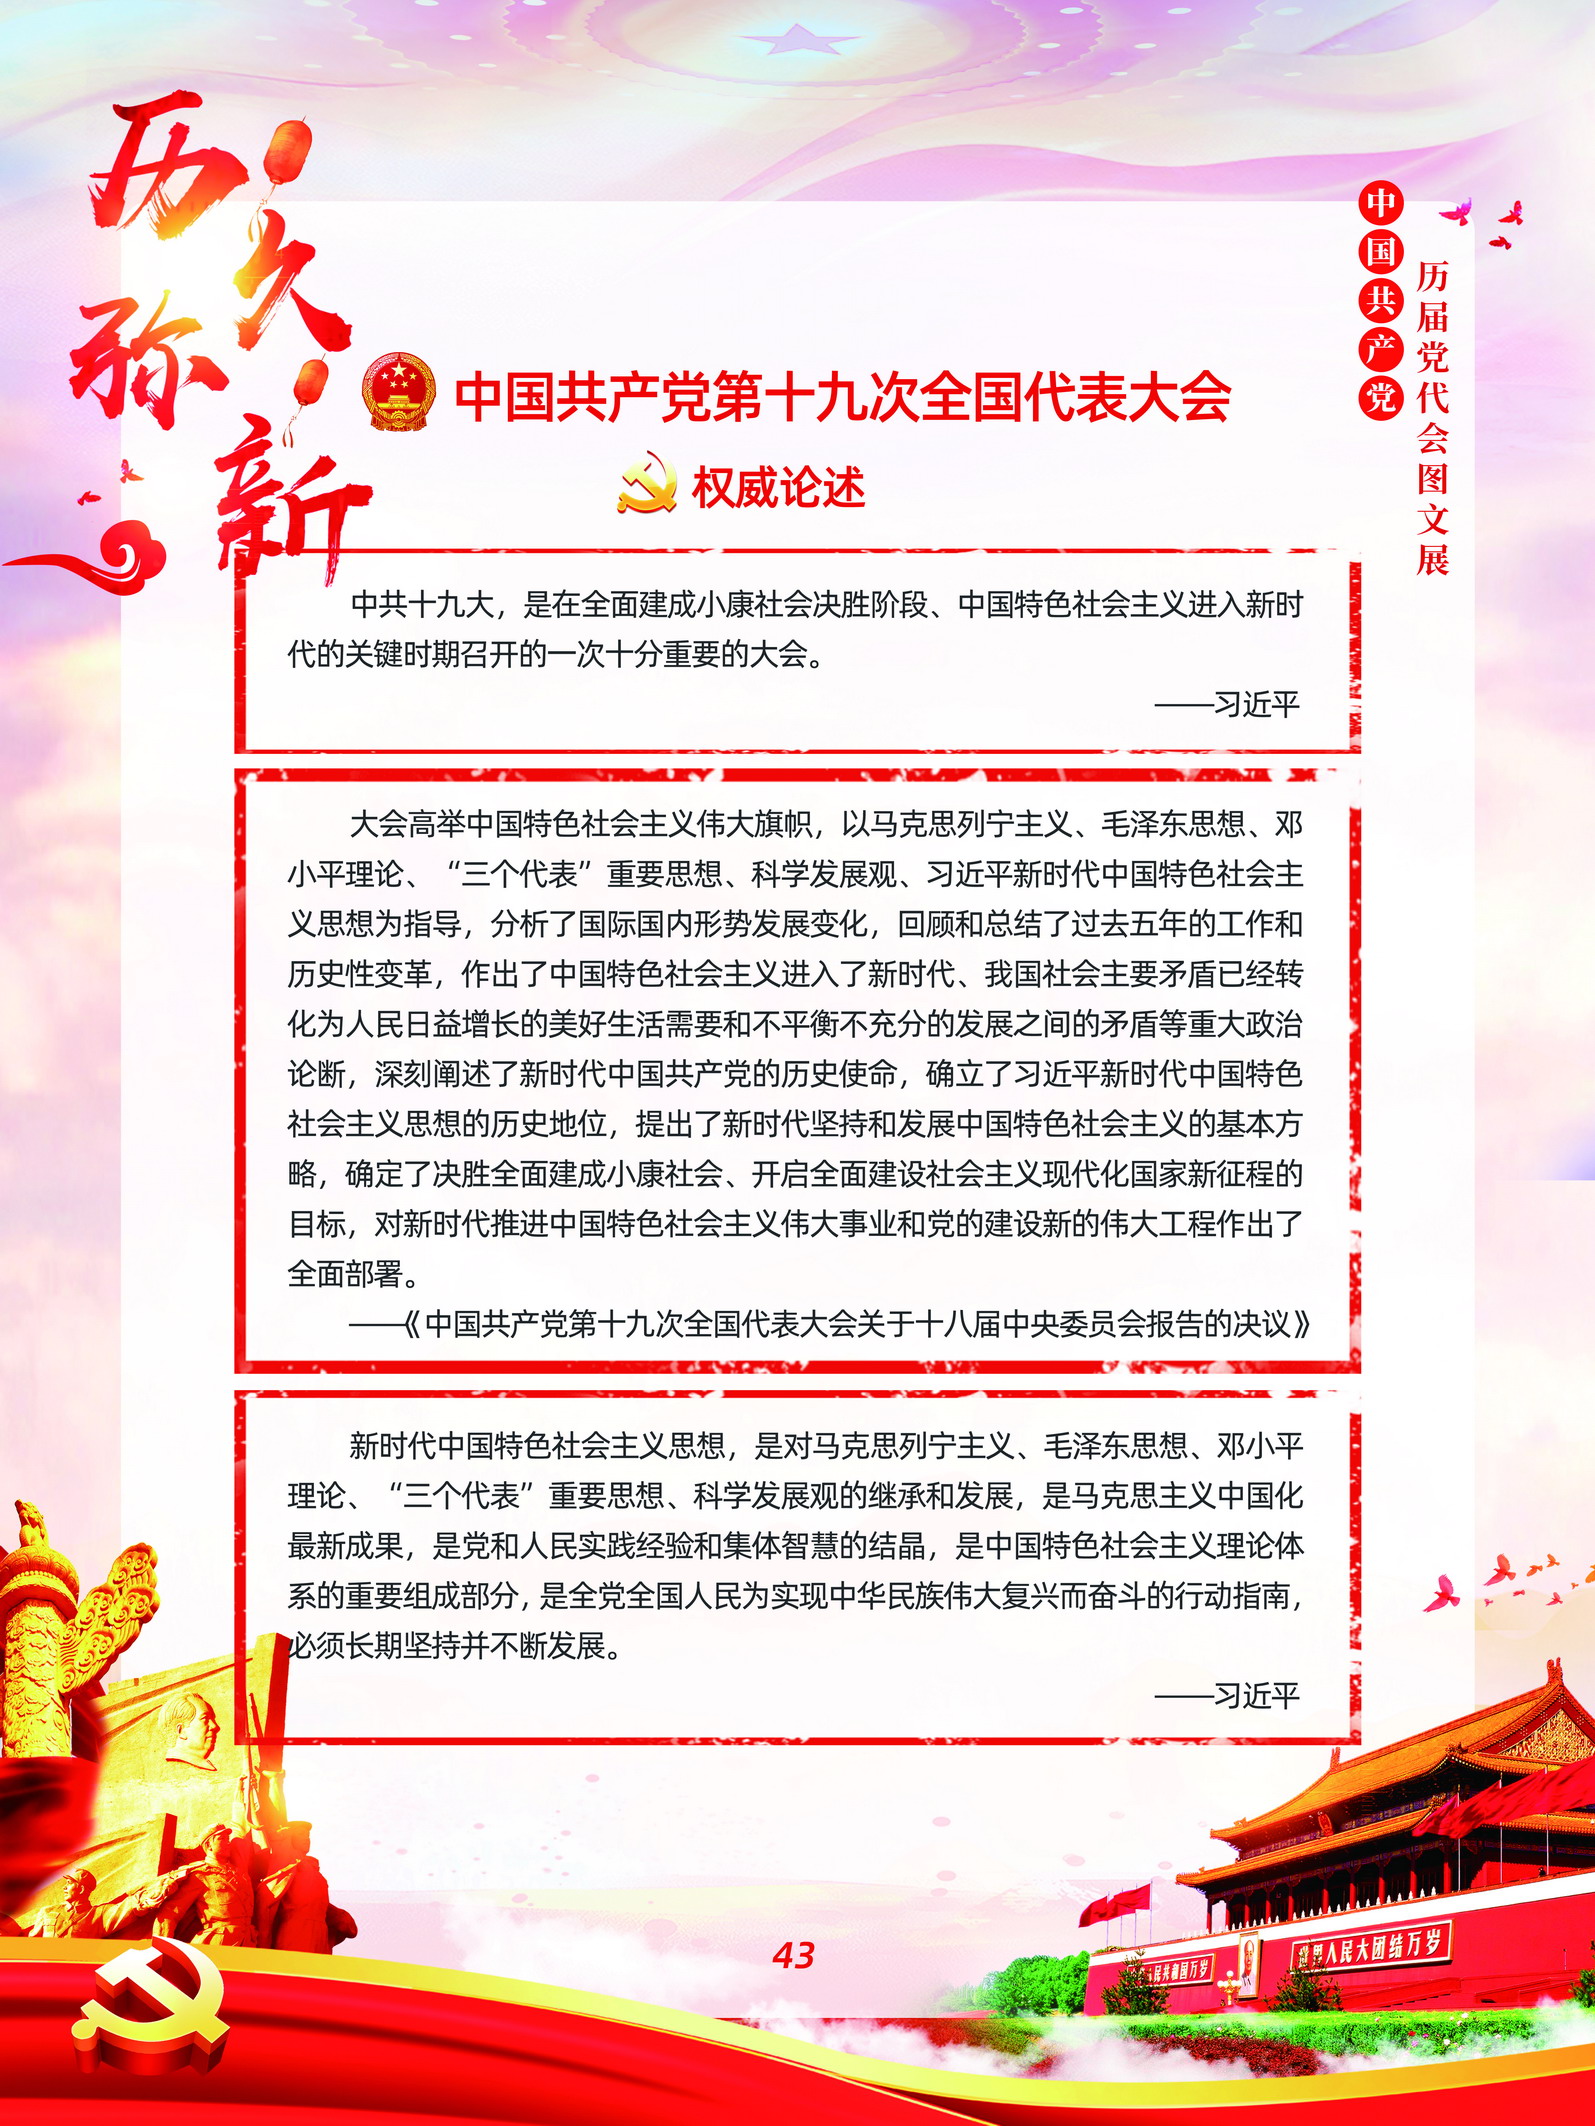 中国共产党历届党代会图文展_图42